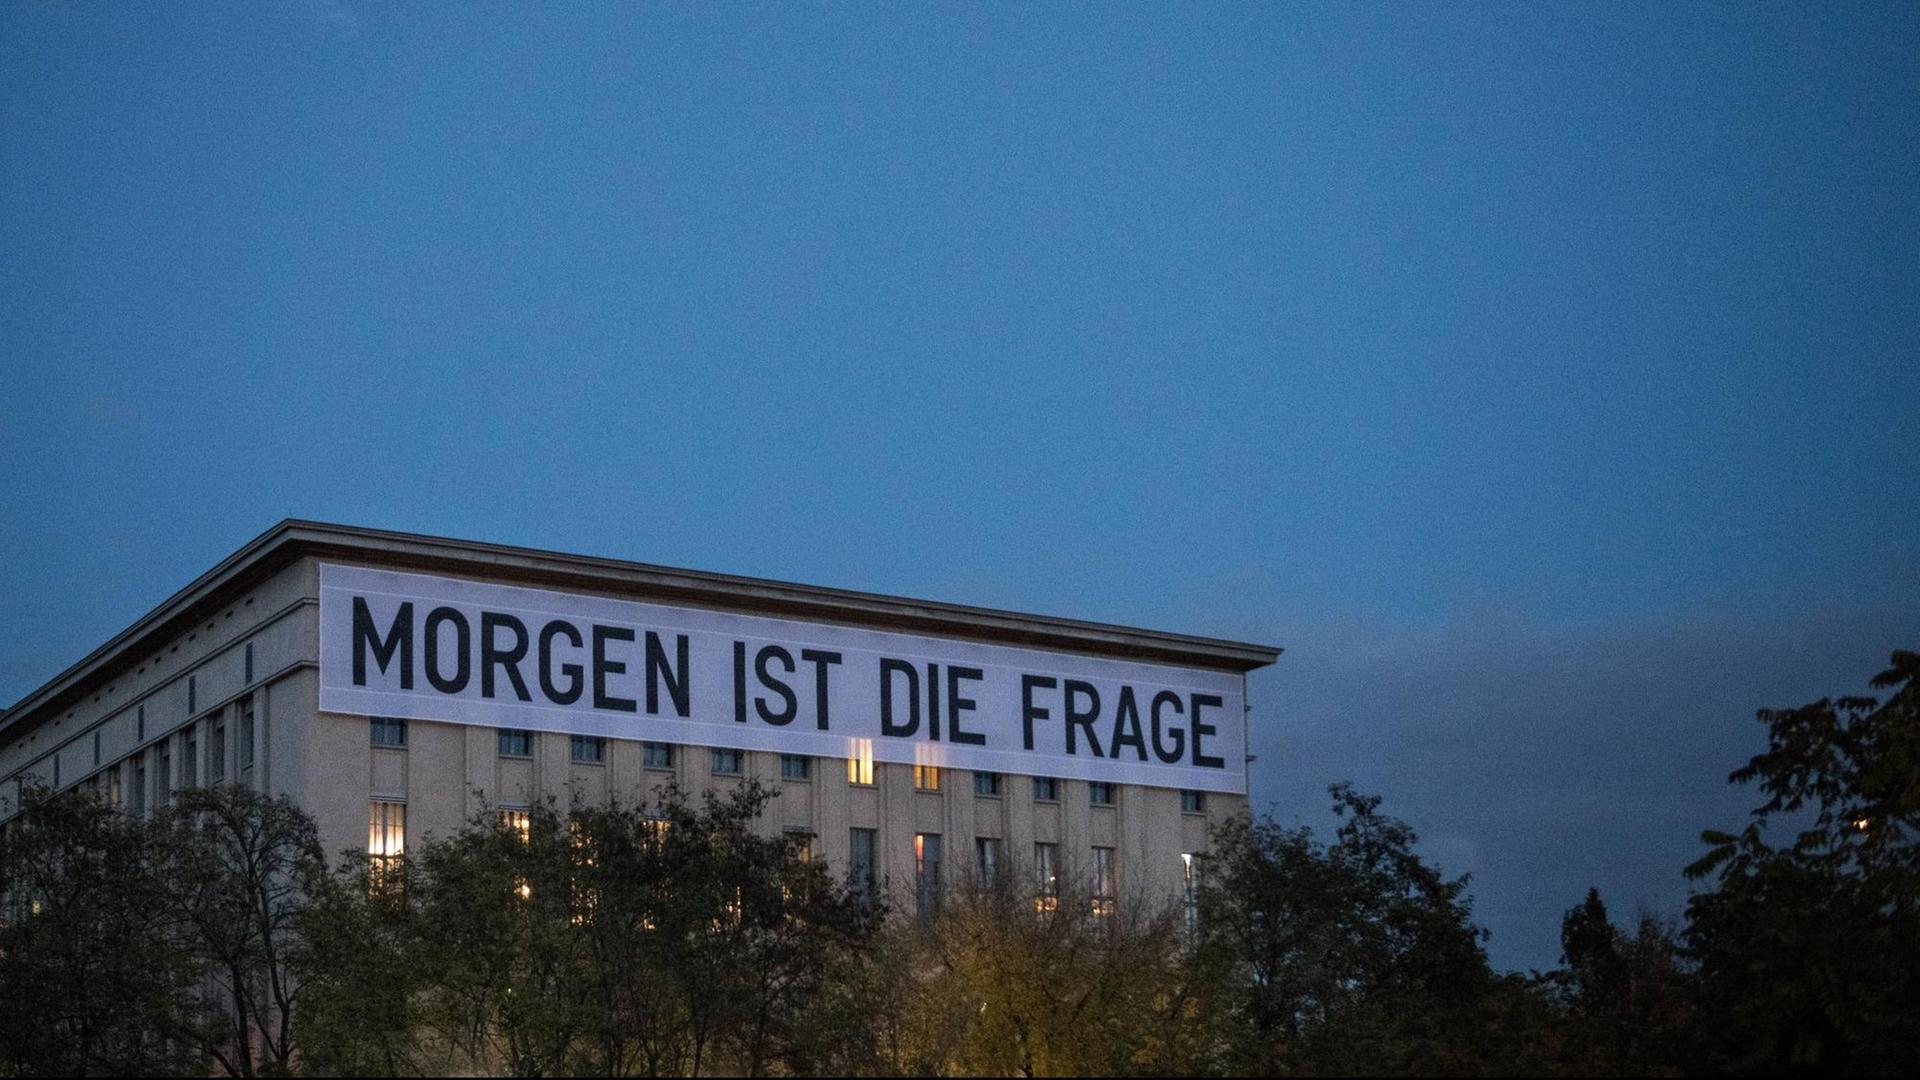 Der Schriftzug "Morgen ist die Frage" des Künstlers Rirkrit Tiravanija hängt an der Fassade des Techno Clubs Berghain in Berlin Friedrichshain.